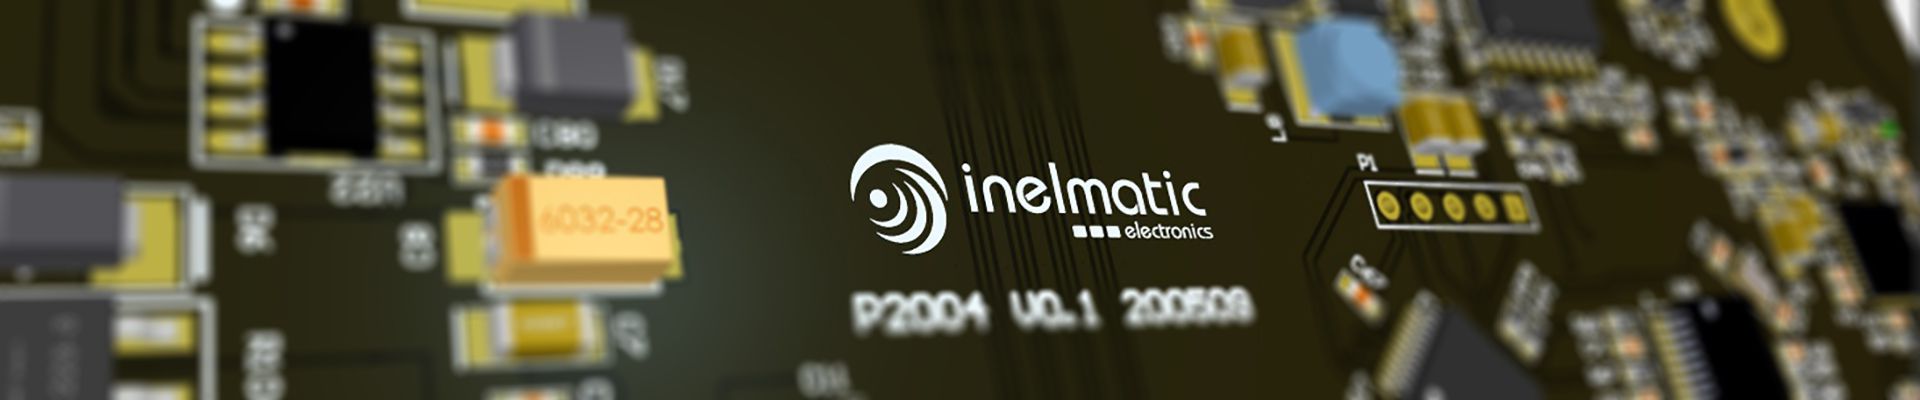 Departamento electrónico de Inelmatic - Inelmatic